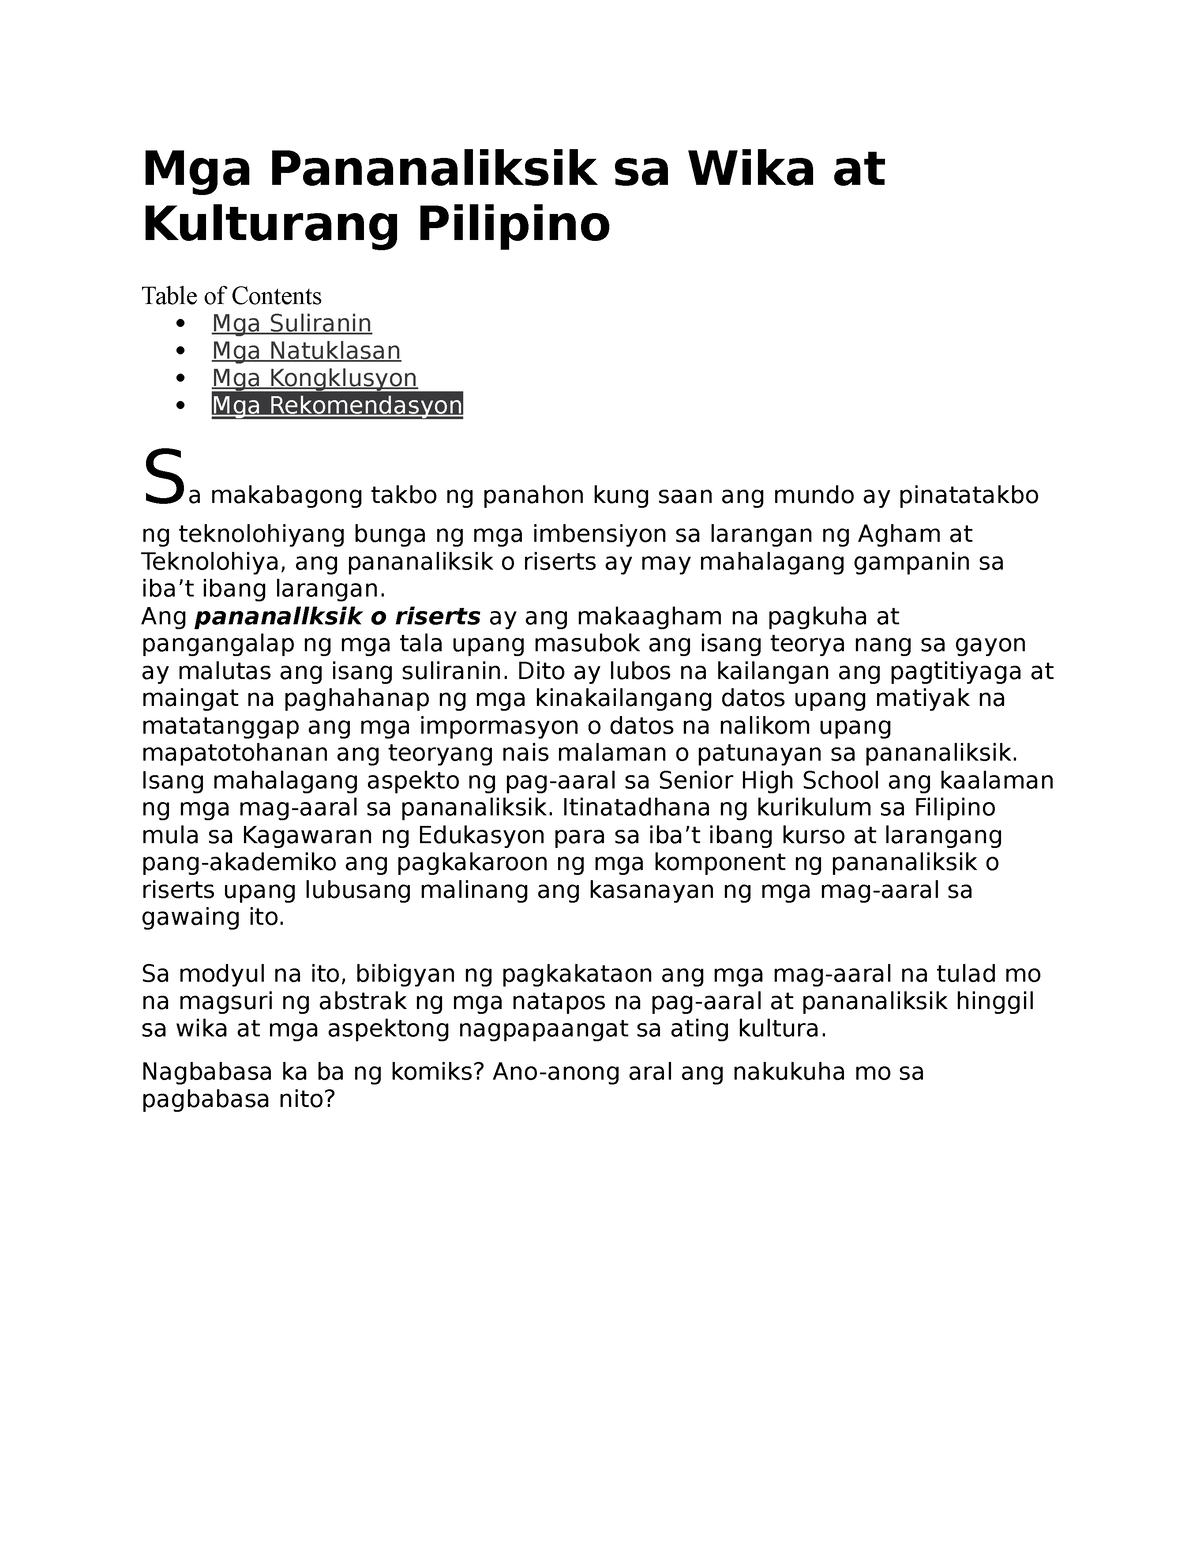 research paper tungkol sa kulturang pilipino